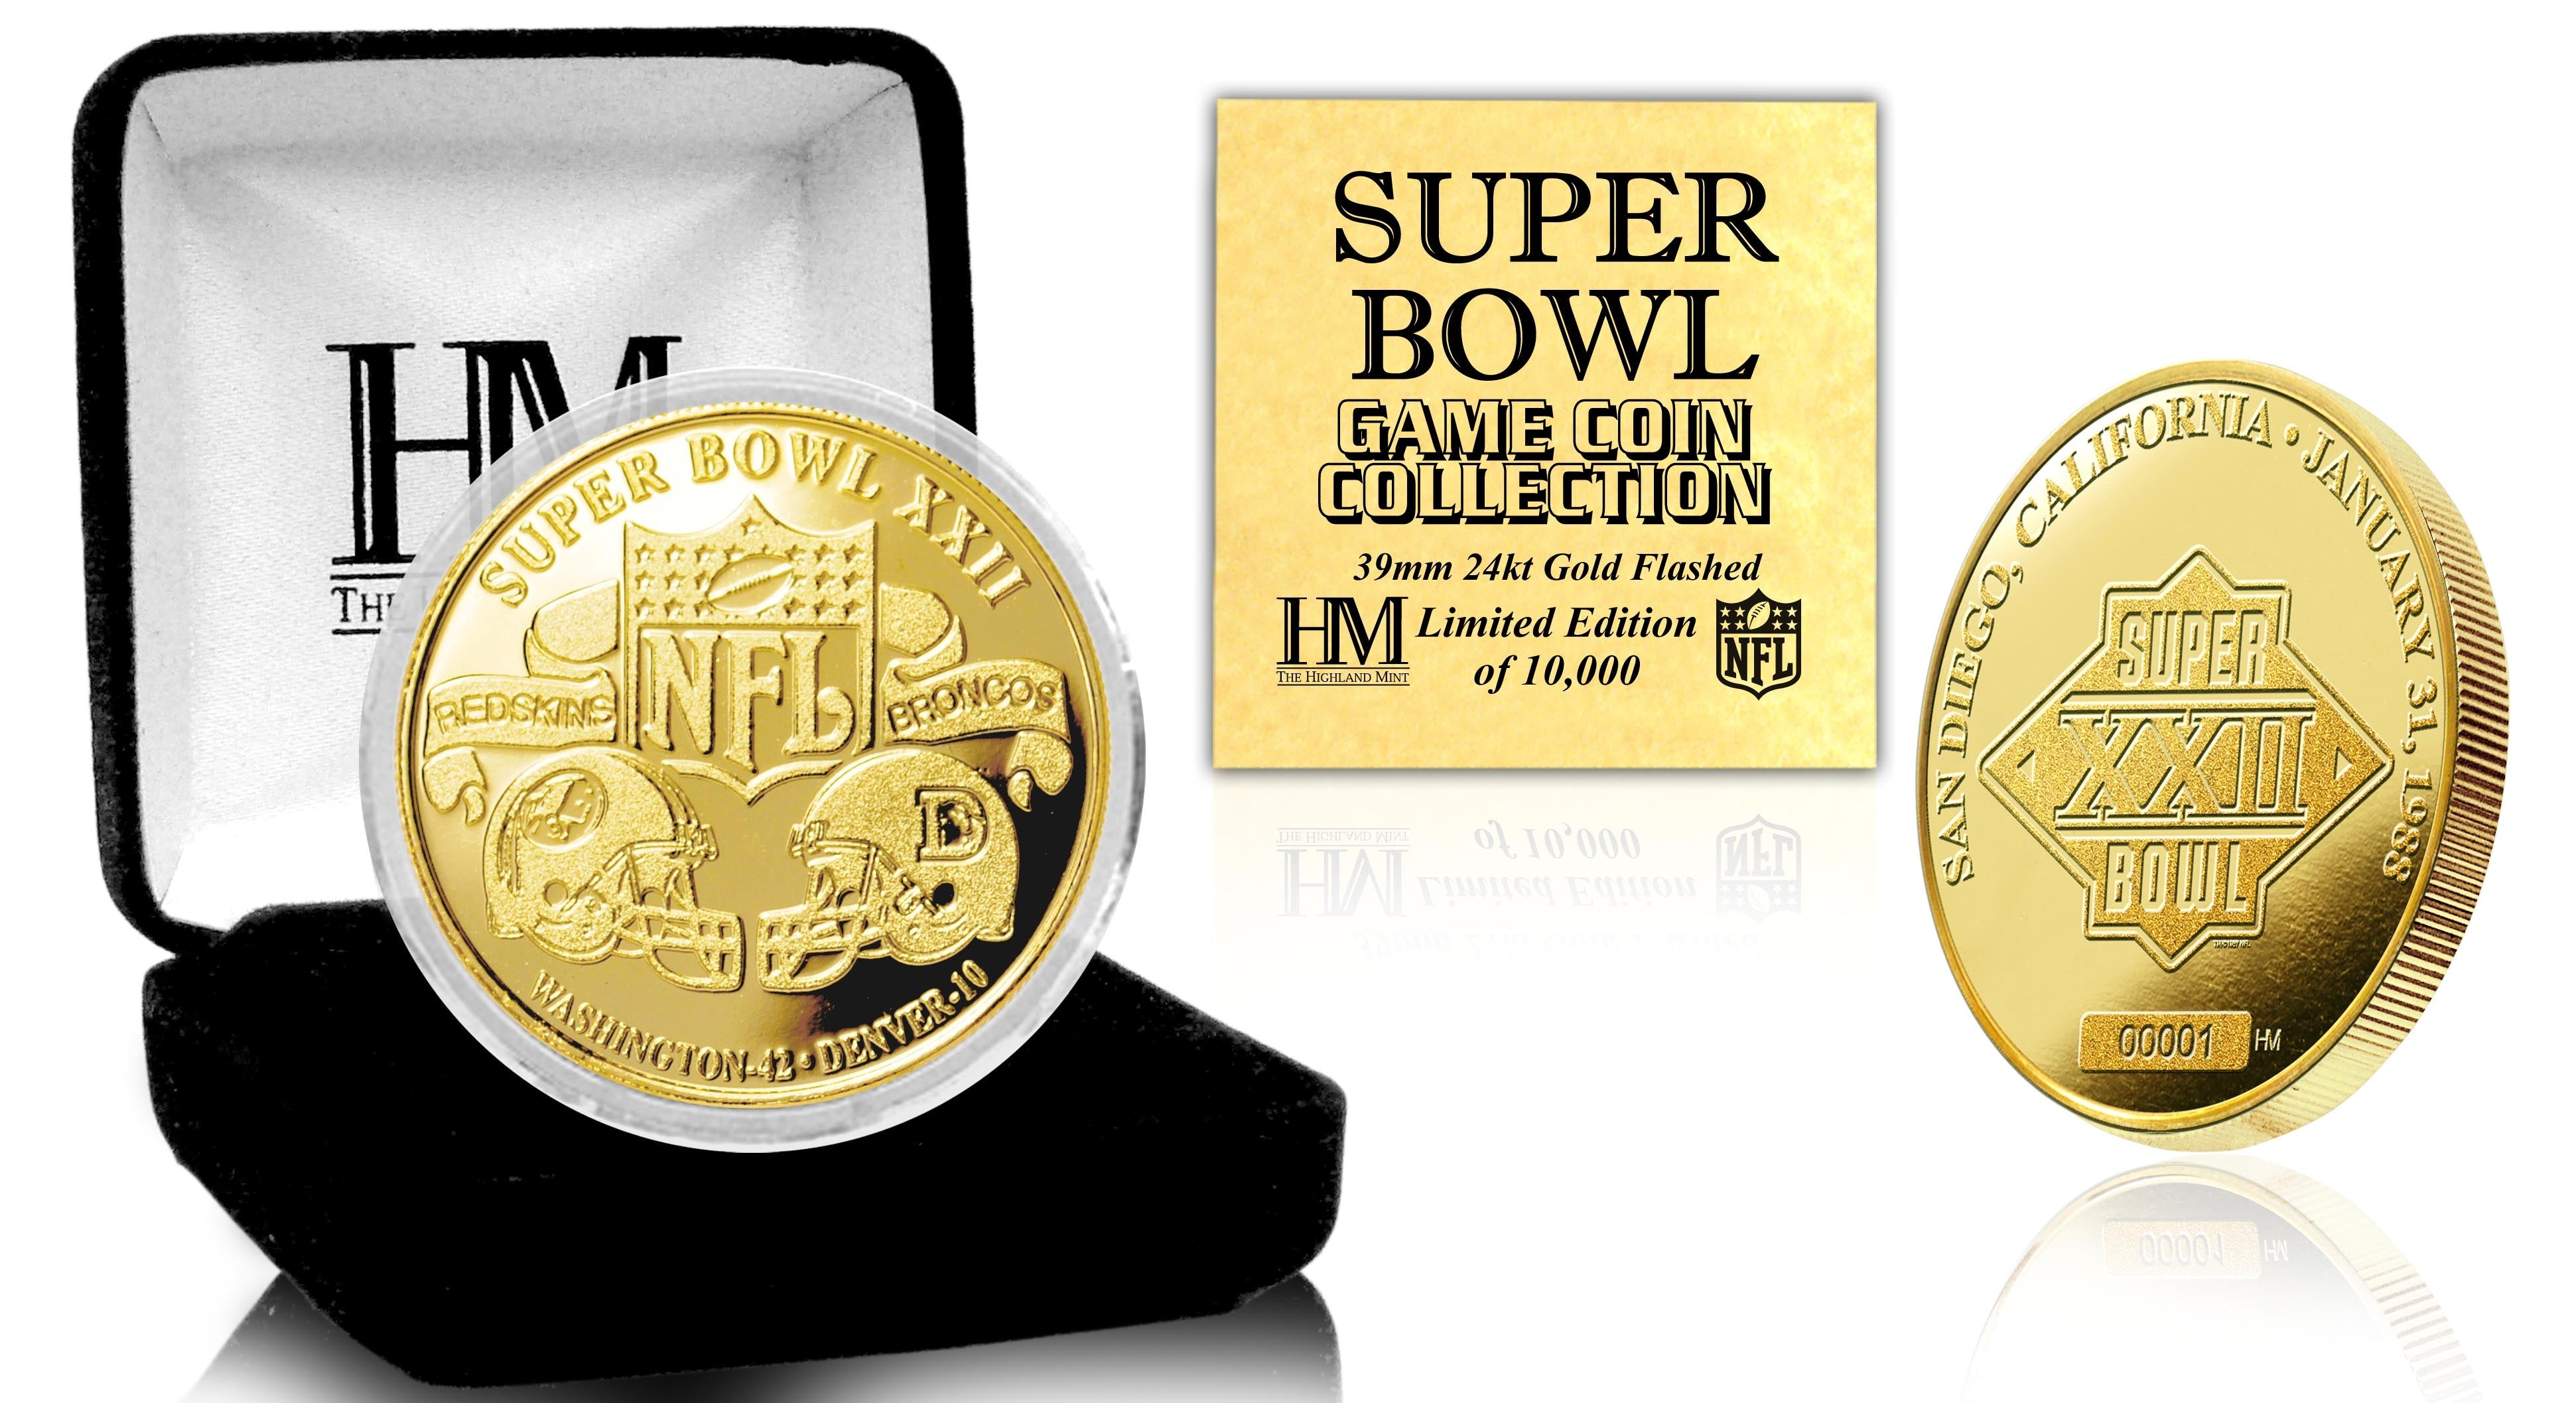 Super Bowl XXII 24kt Gold Flip Coin